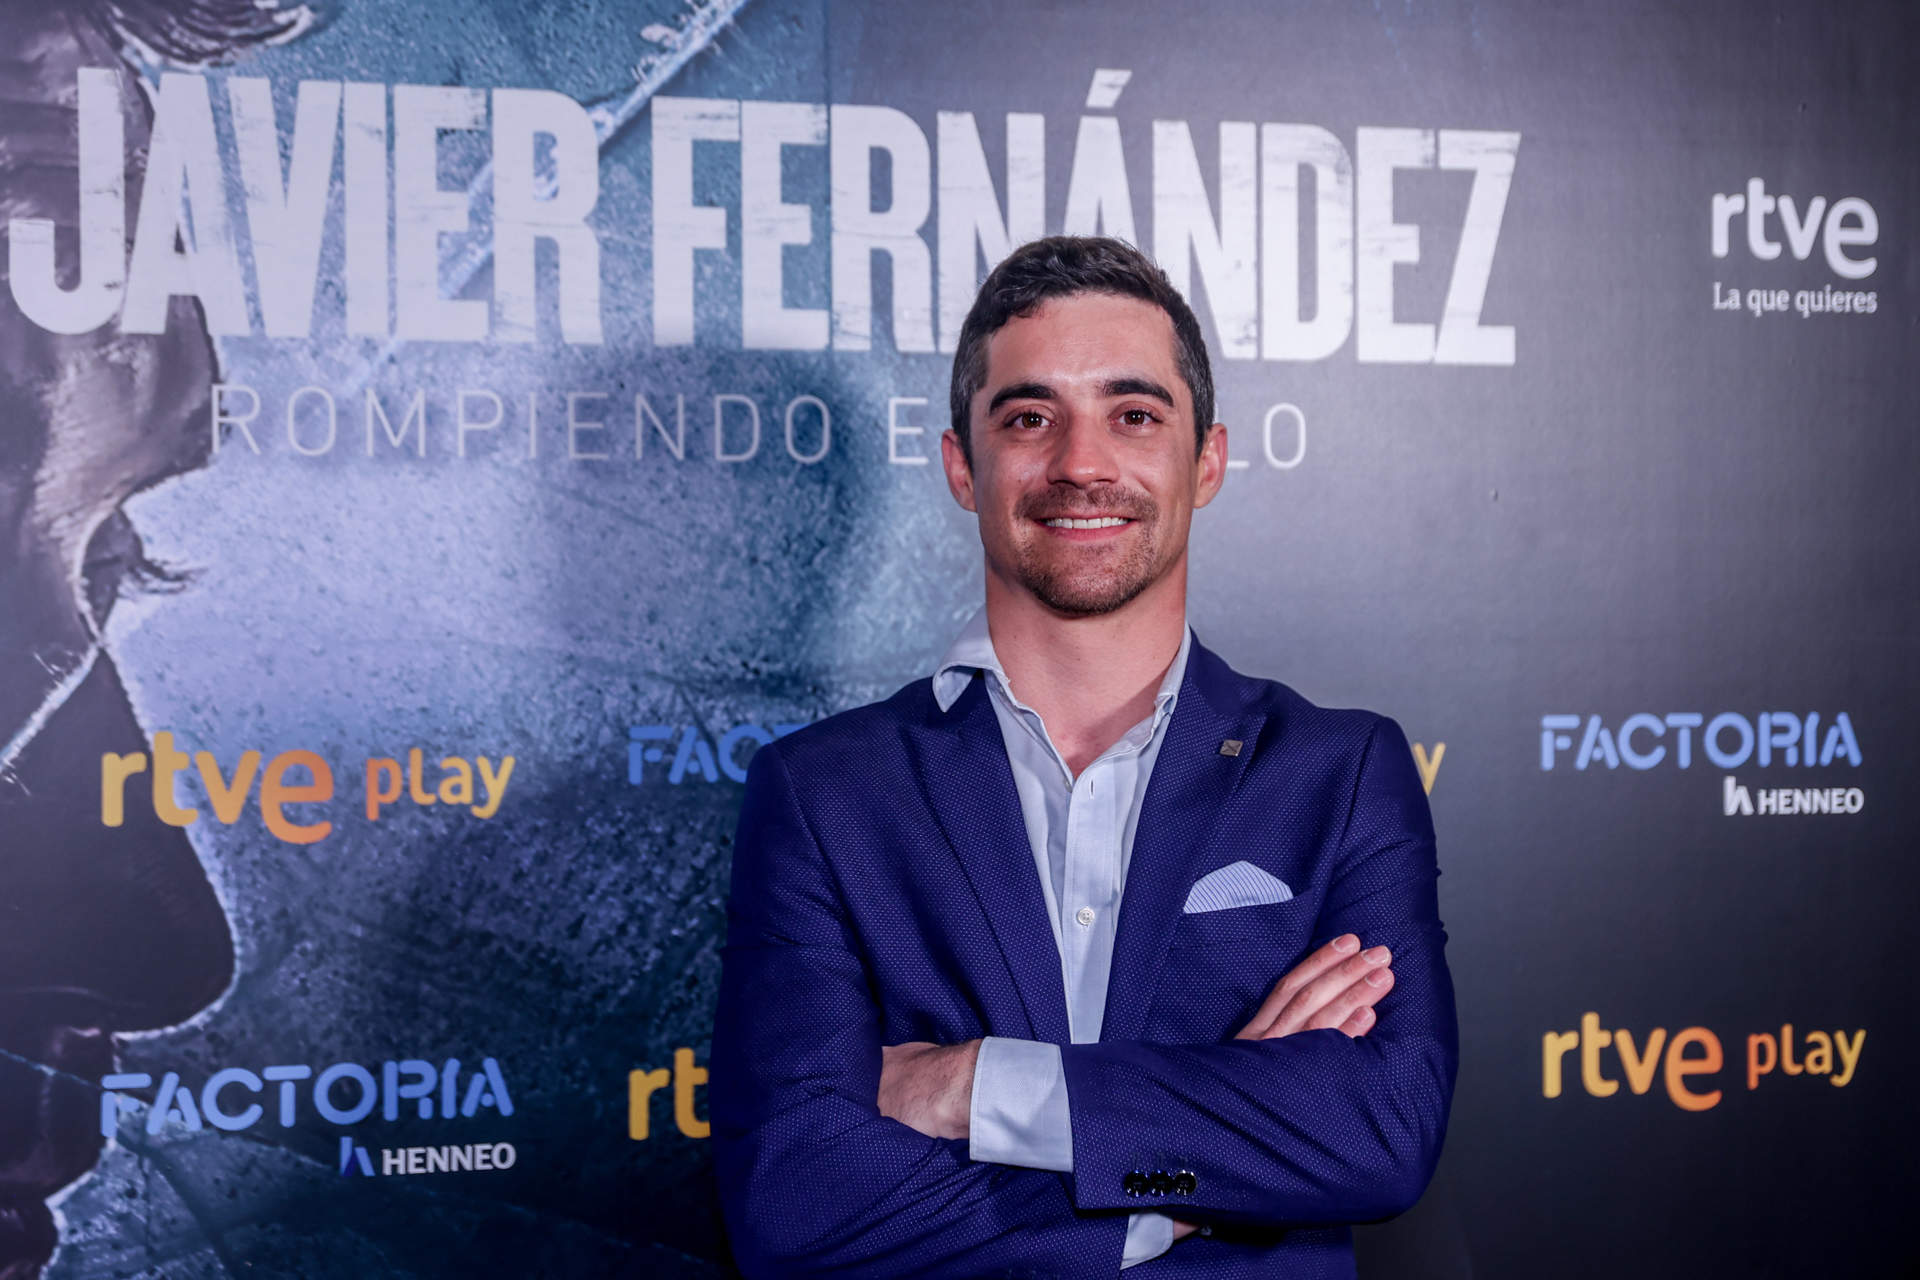 'Javier Fernández. Rompiendo el hielo' de RTVE Play, Delfín de Plata en los Cannes Corporate Media & TV Awards